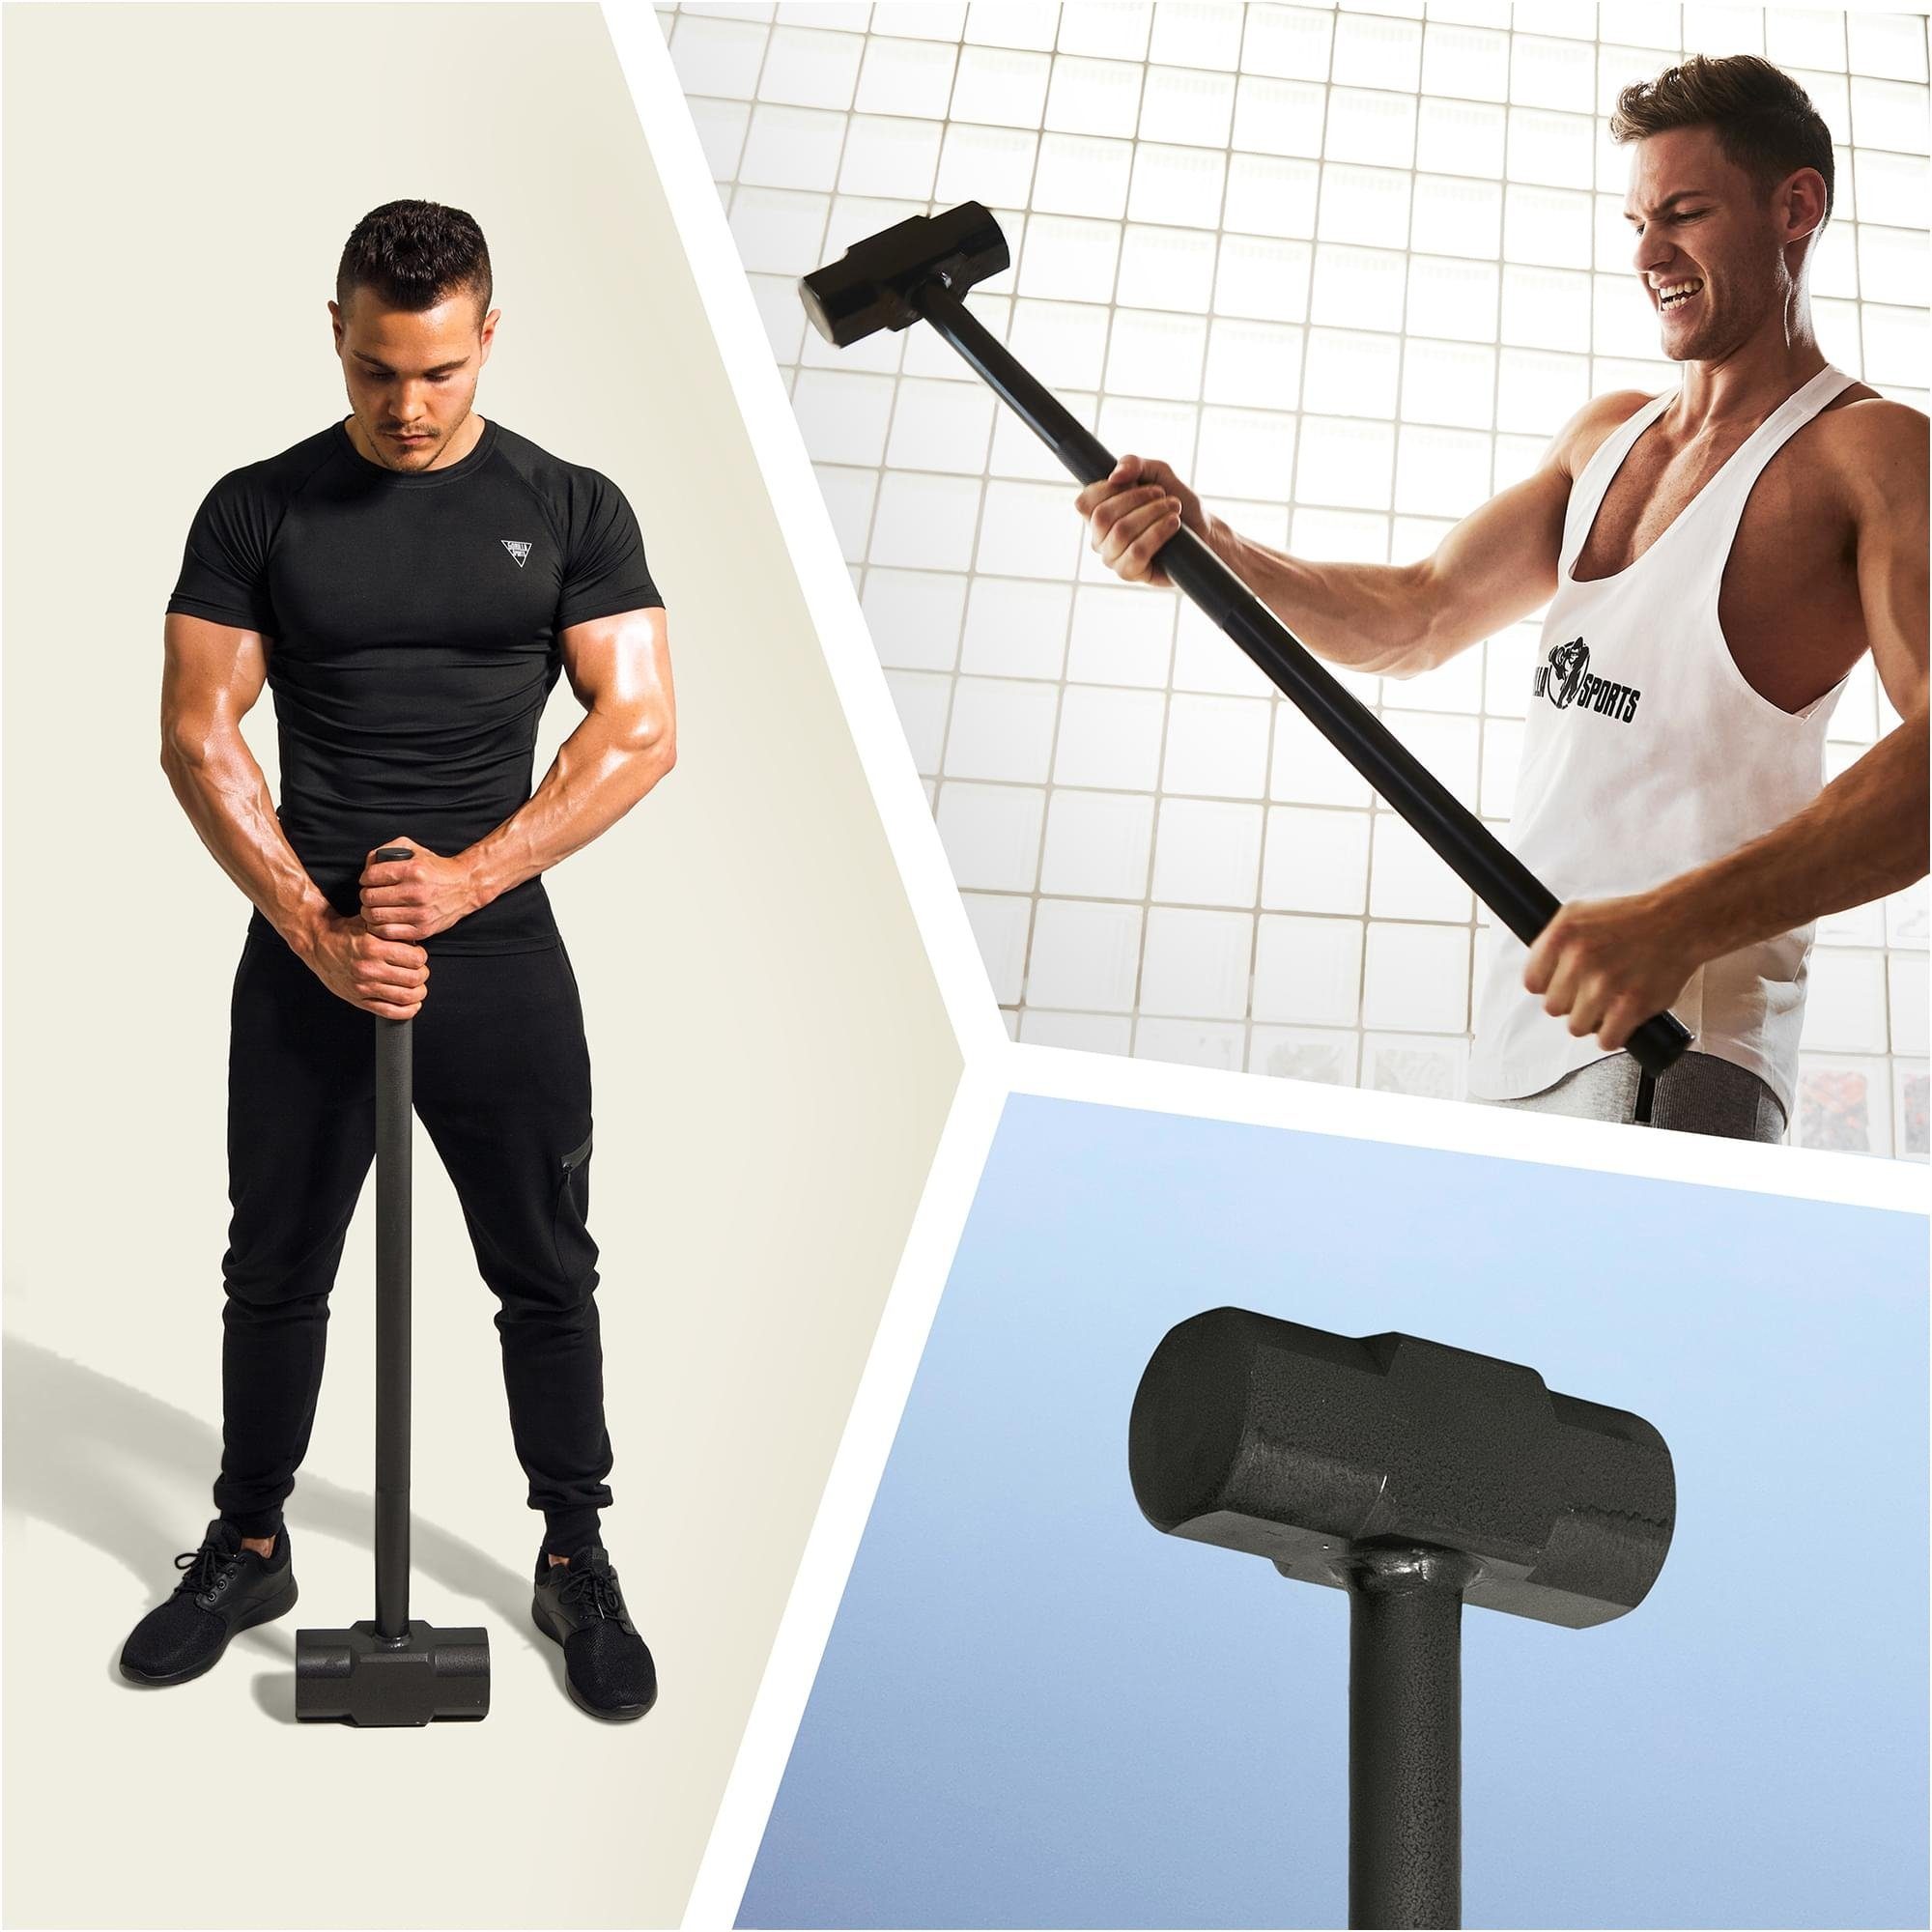 Gym-Hammer Stahl - 6 Zusatzgewichte Hohl - Griff, GORILLA Fitnesshammer, SPORTS kg Gewichtshammer,